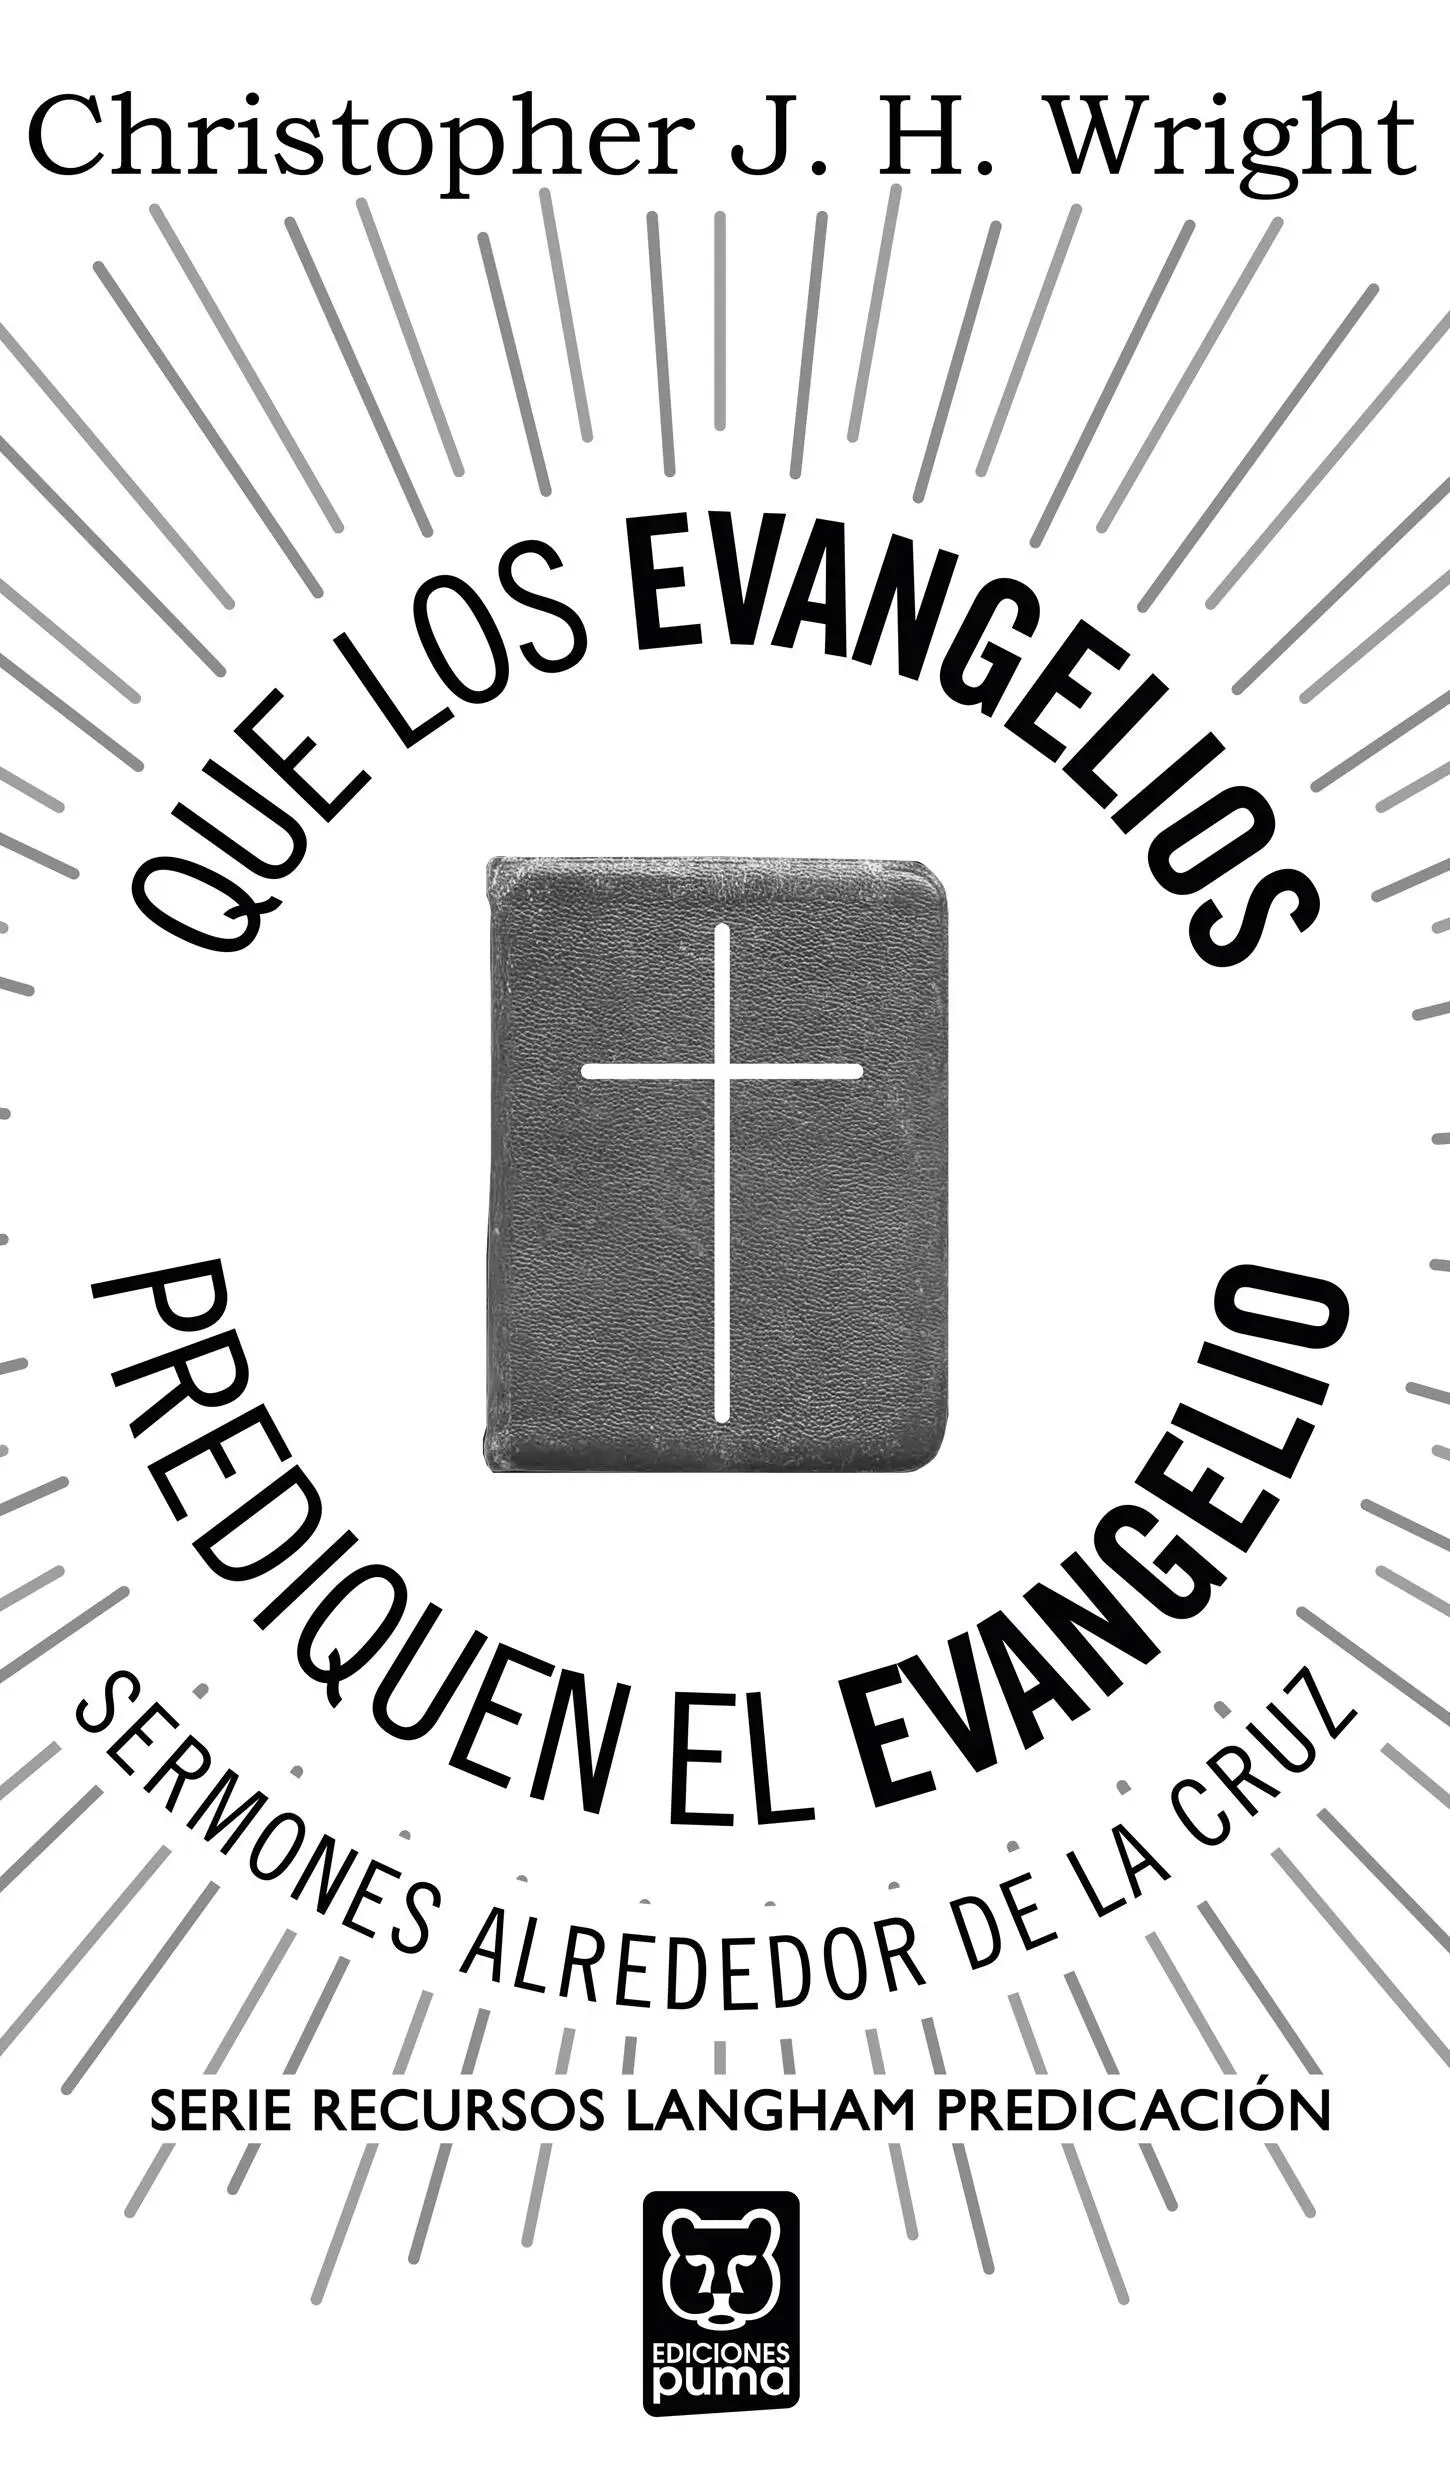 Que los evangelios prediquen el Evangelio Sermones alrededor de la cruz - фото 2